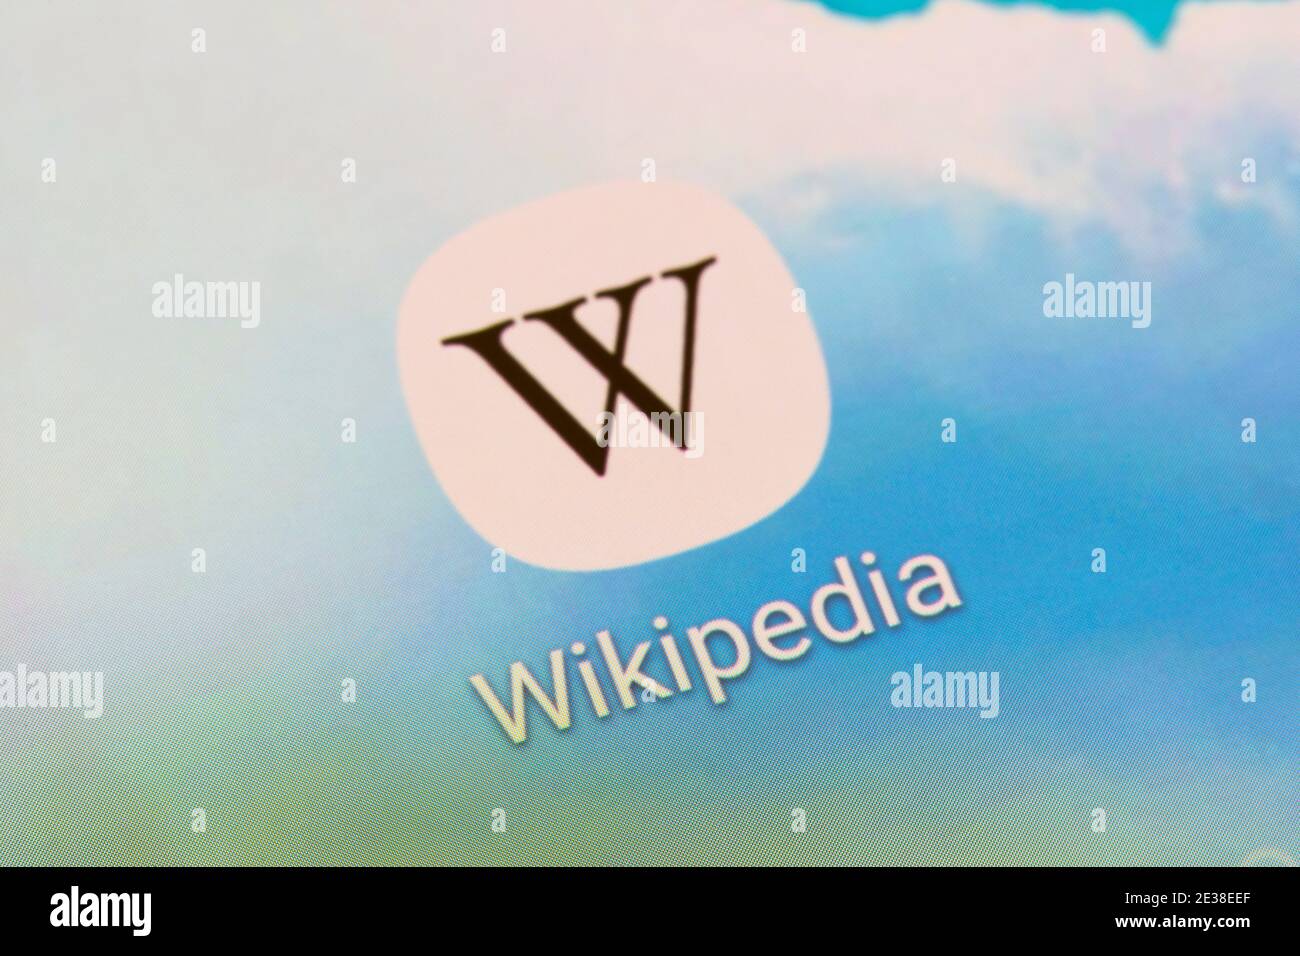 Un gros plan sur l'icône et le logo Wikipédia sur l'écran d'un smartphone. Wikipedia est une encyclopédie en ligne gratuite hébergée par la fondation Wikipedia Banque D'Images